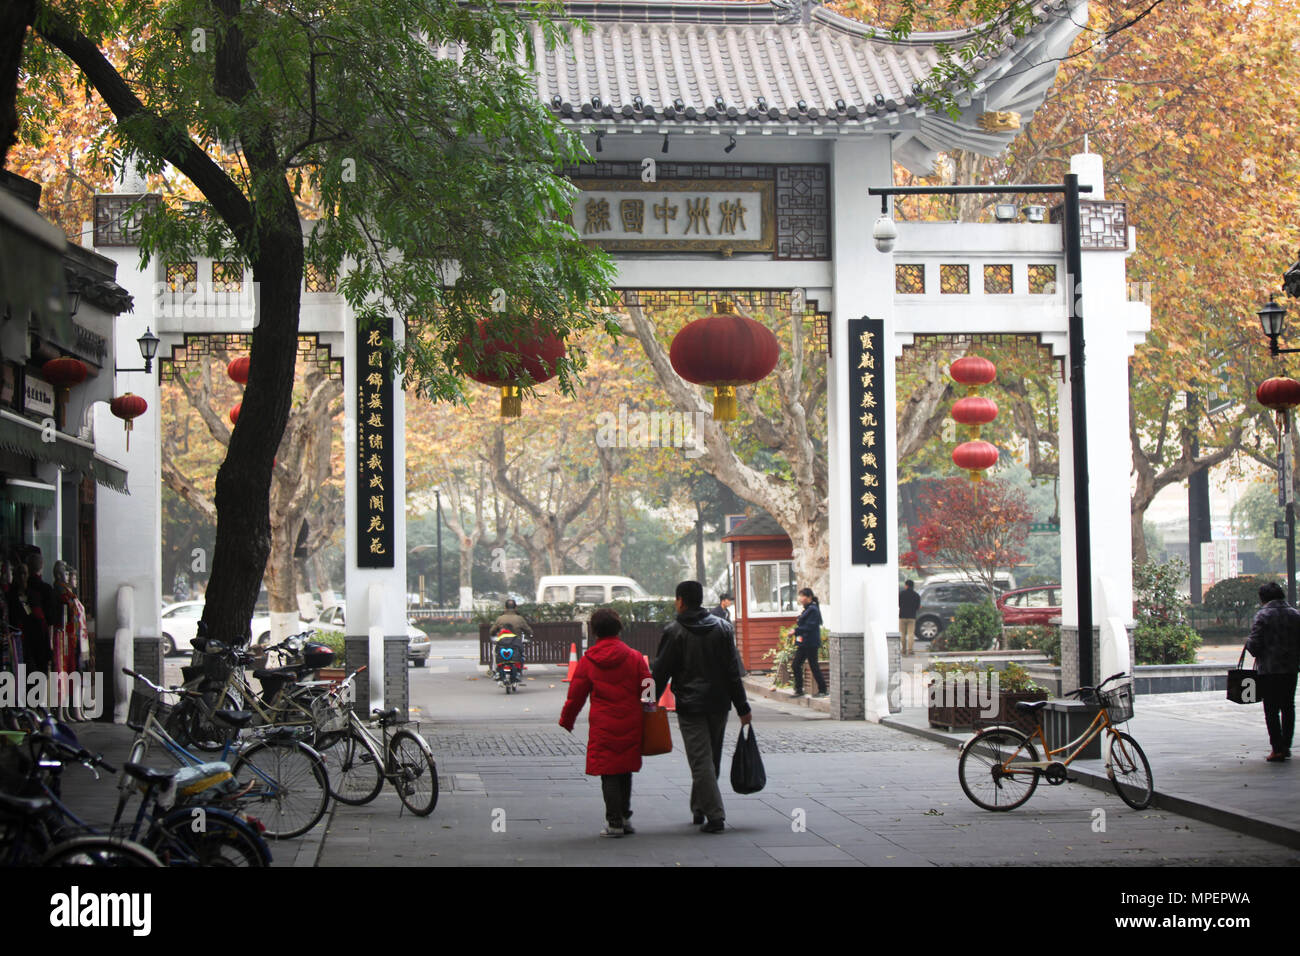 El pueblo chino en la ruta de la seda de Hangzhou Foto de stock